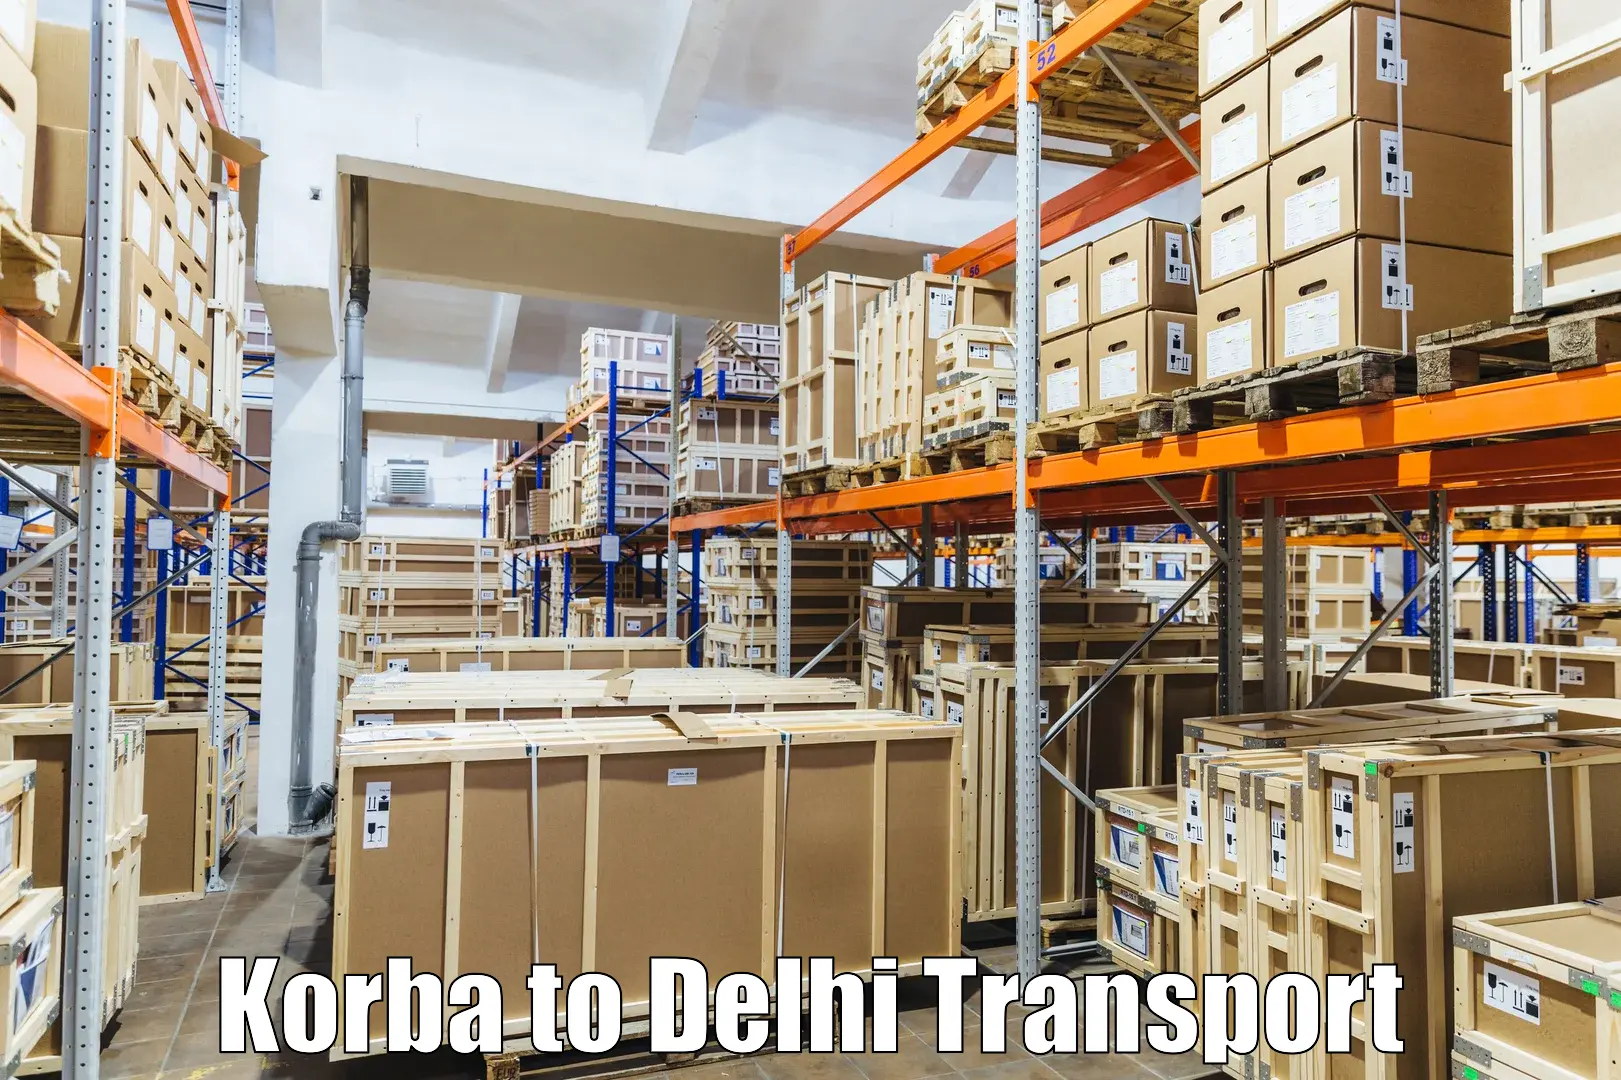 Nearest transport service Korba to Lodhi Road